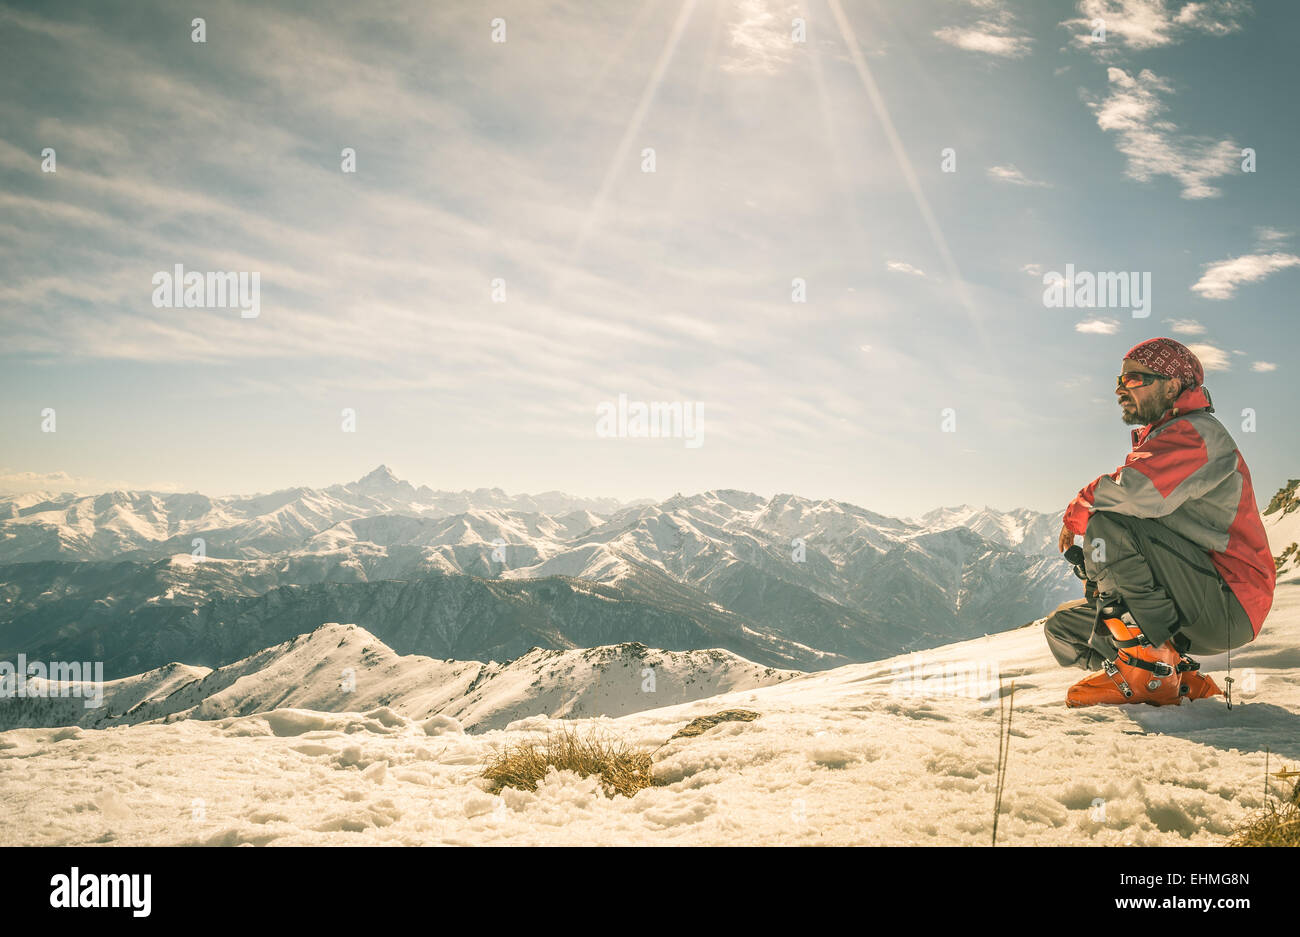 Alpinista sulla cima del monte. Girato in controluce, splendida vista panoramica dell'arco alpino. Concetto di successo e conquista Foto Stock